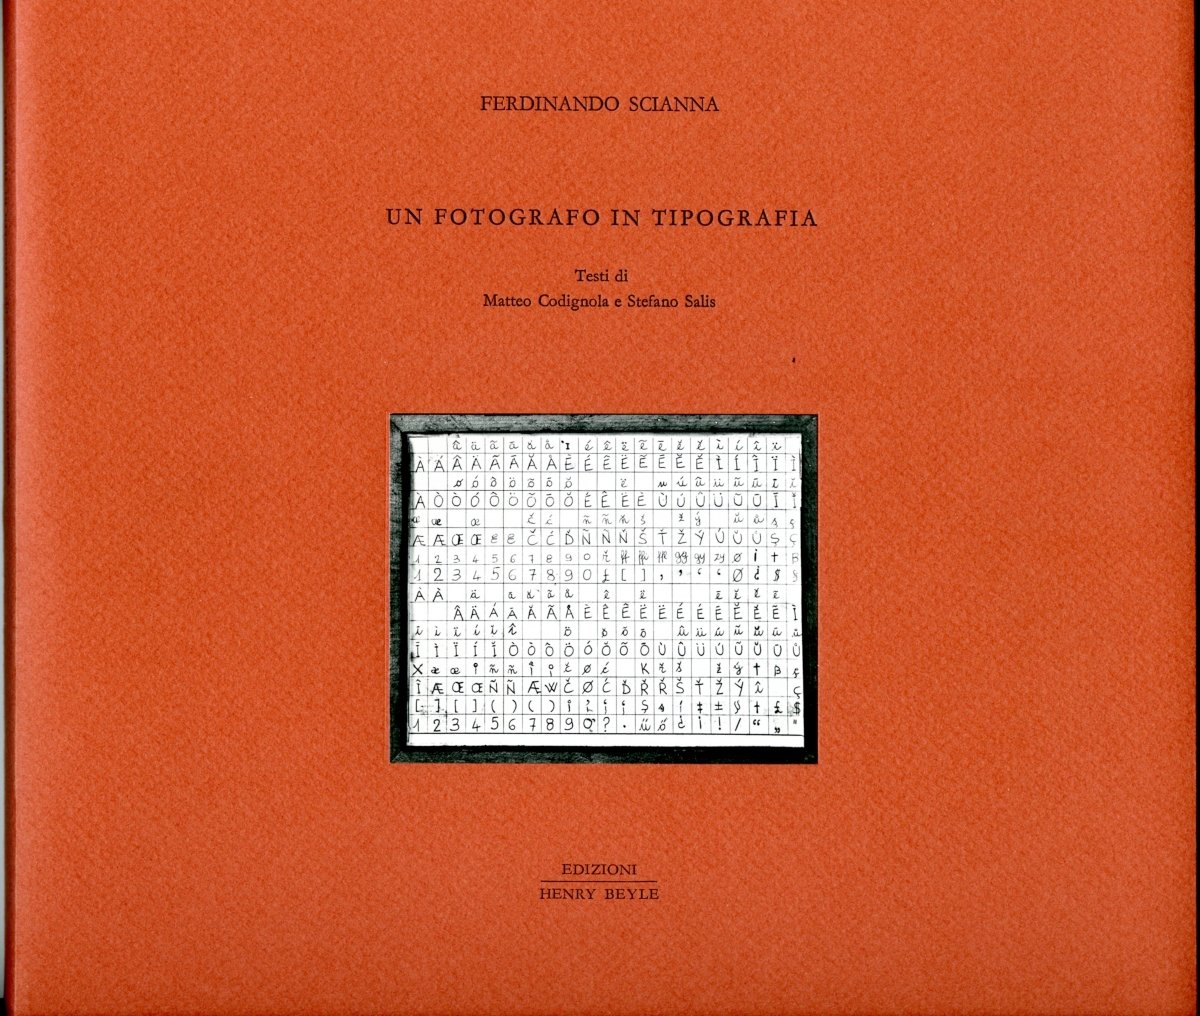 Ferdinando Scianna, Un fotografo in tipografia (Edizioni Henry Beyle, Milano 2017)